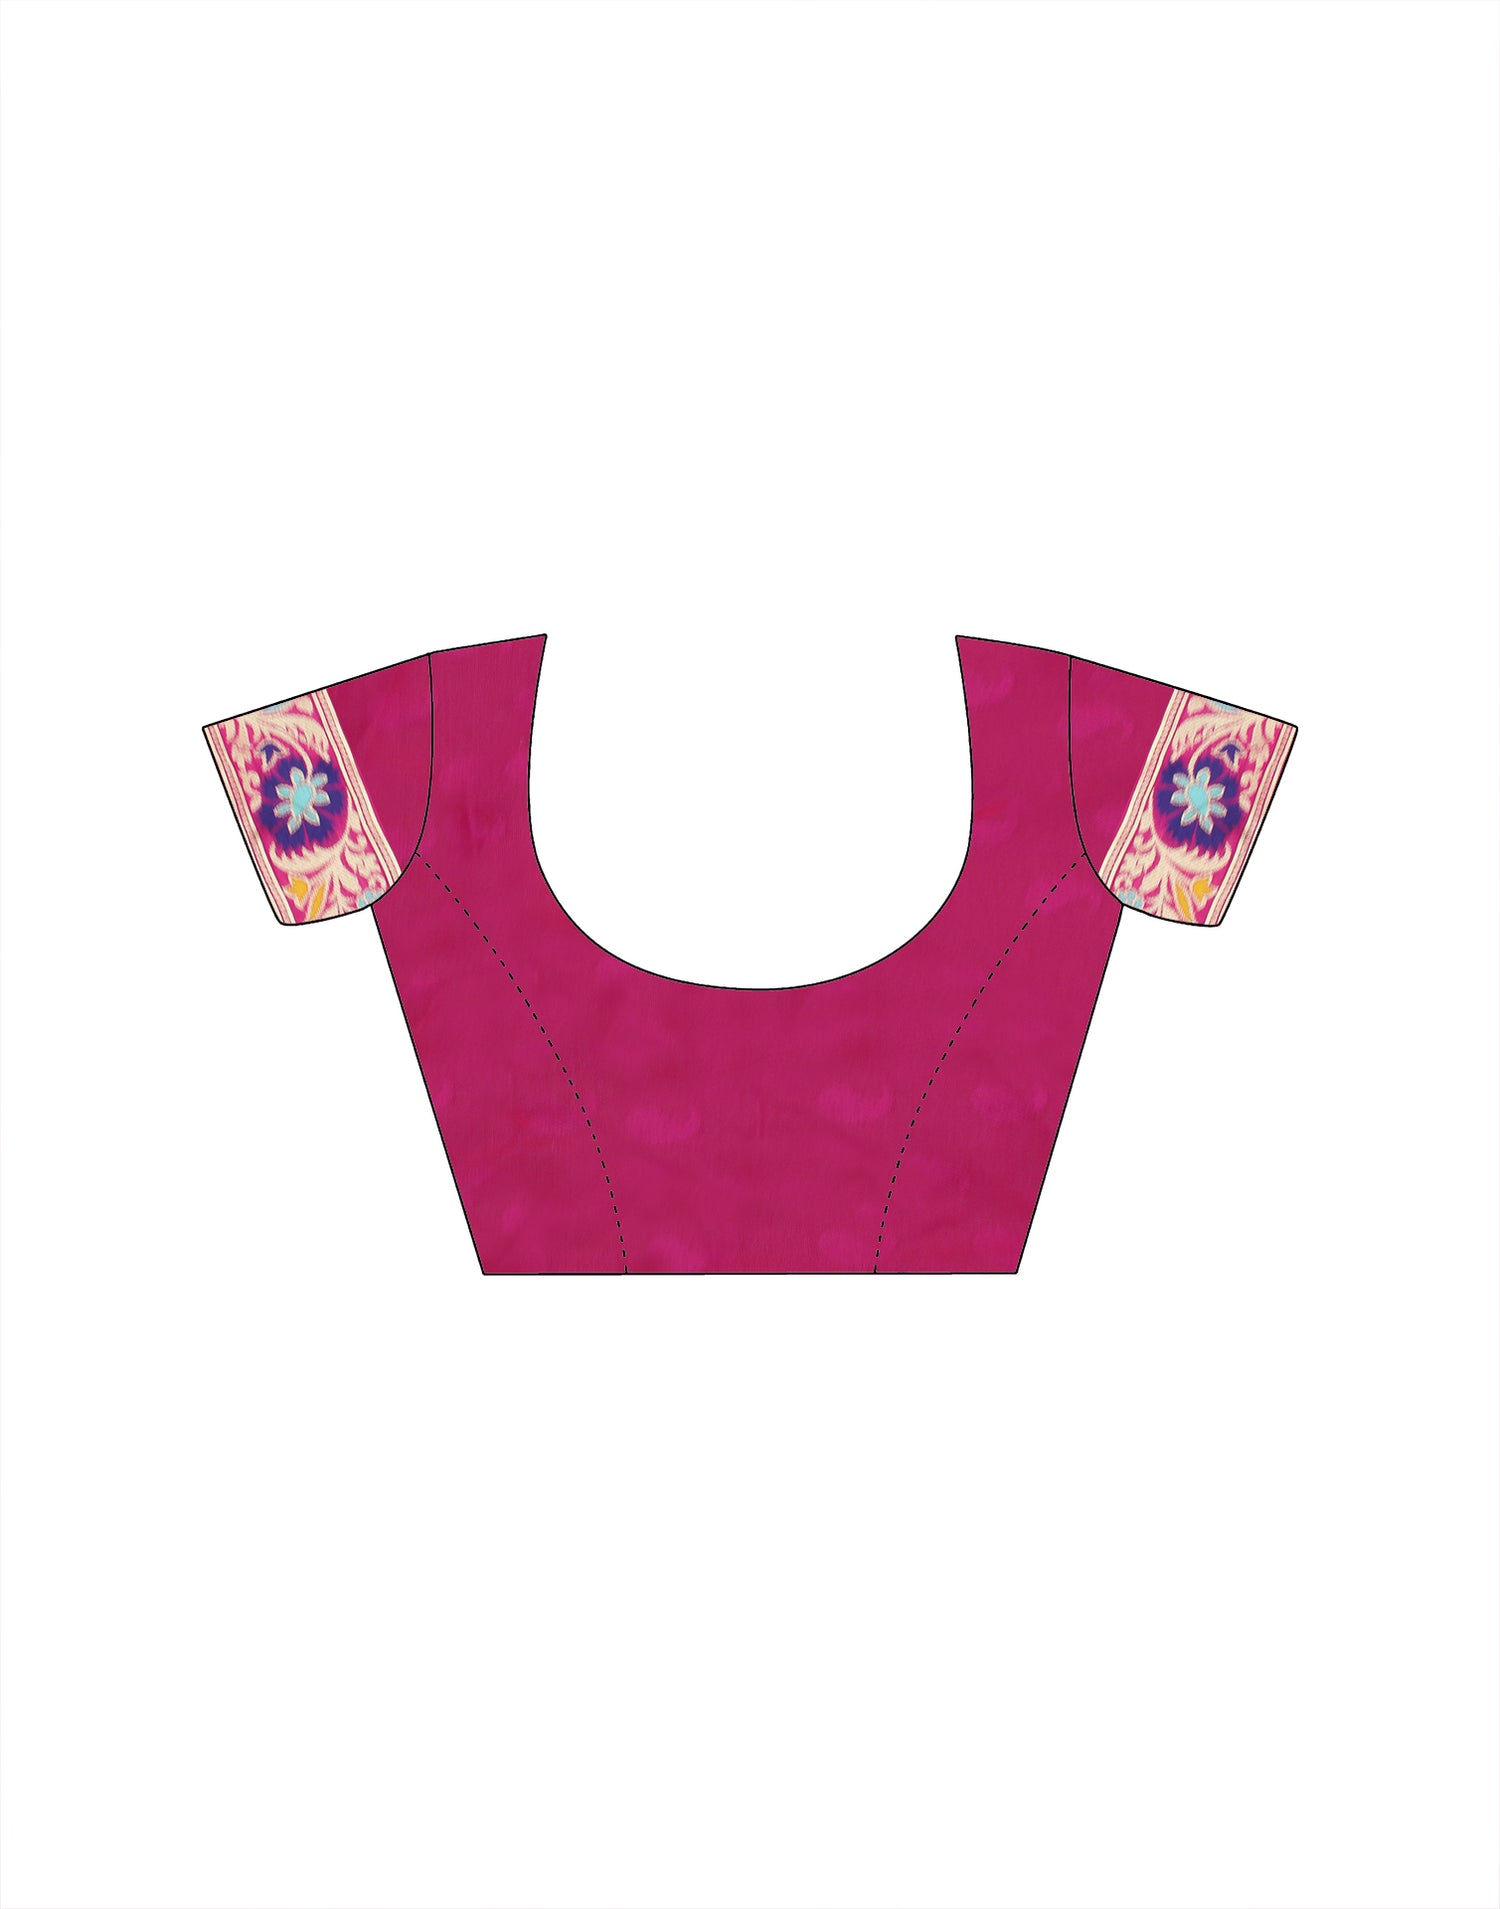 Pink Weaving Silk Banarasi Saree